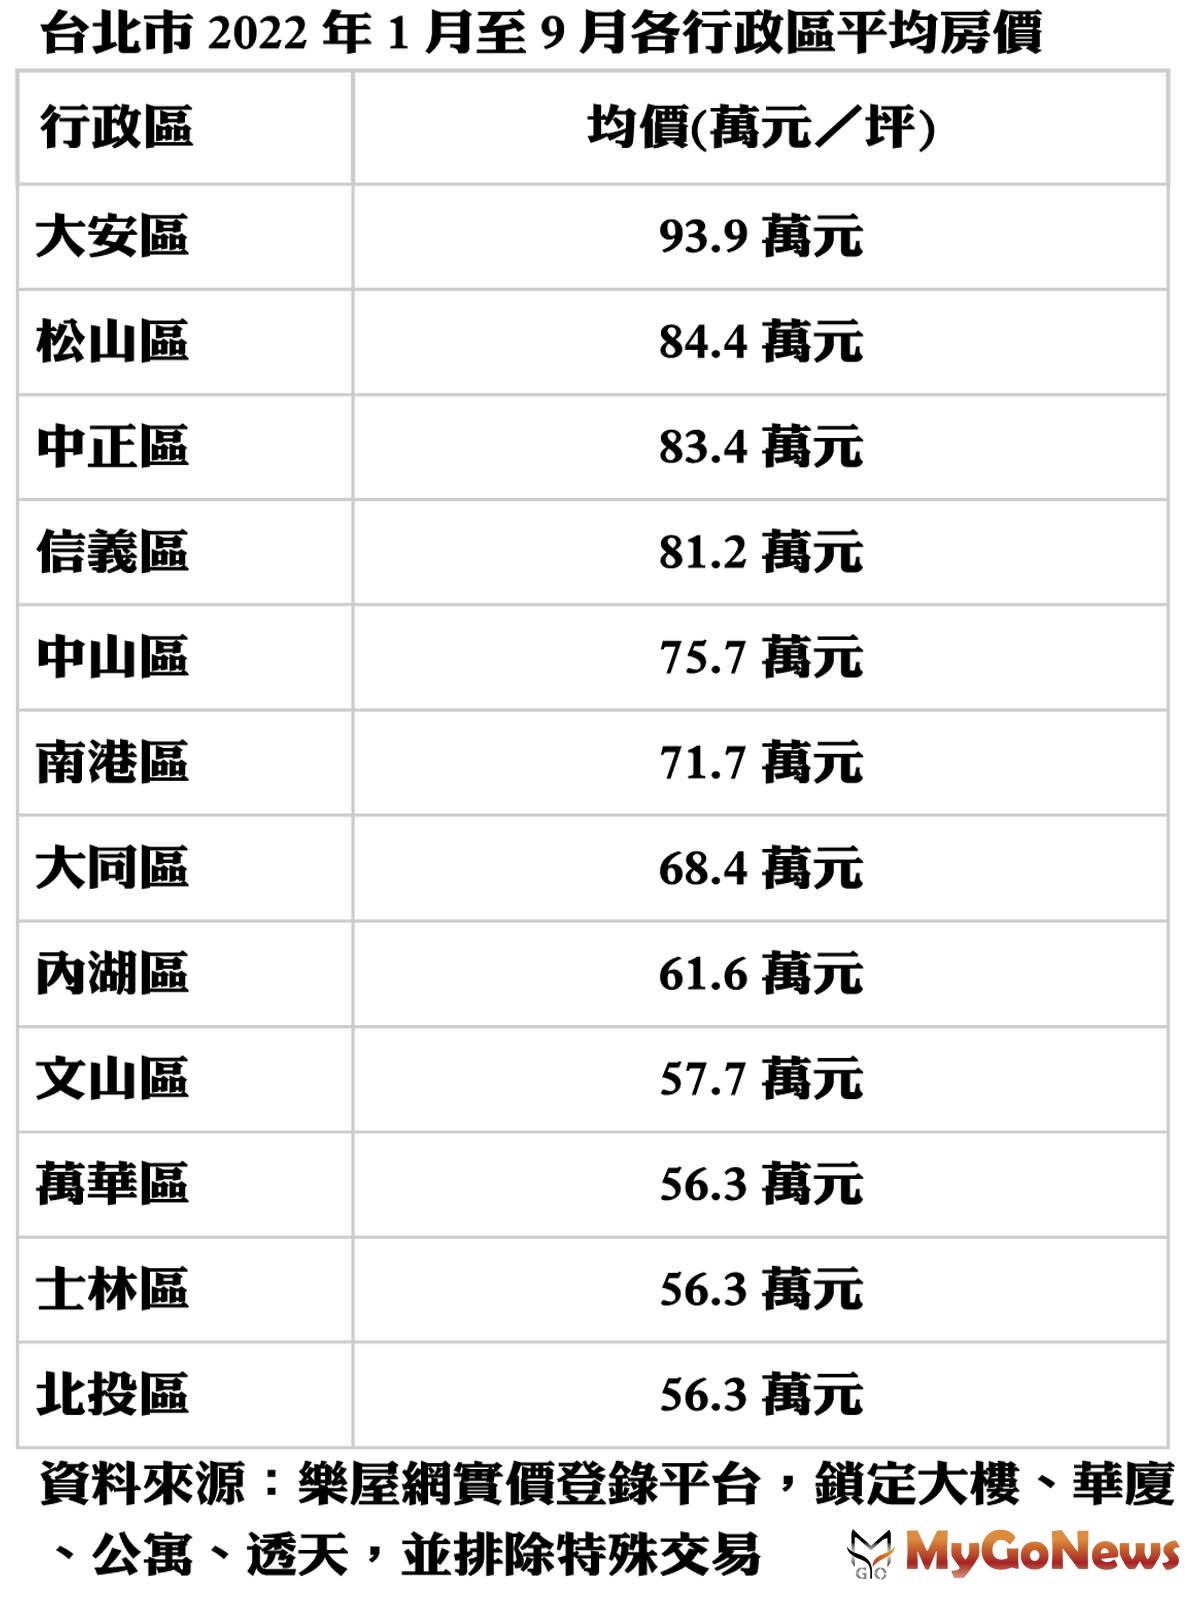 台北市2022年1月至9月各行政區平均房價 MyGoNews房地產新聞 市場快訊